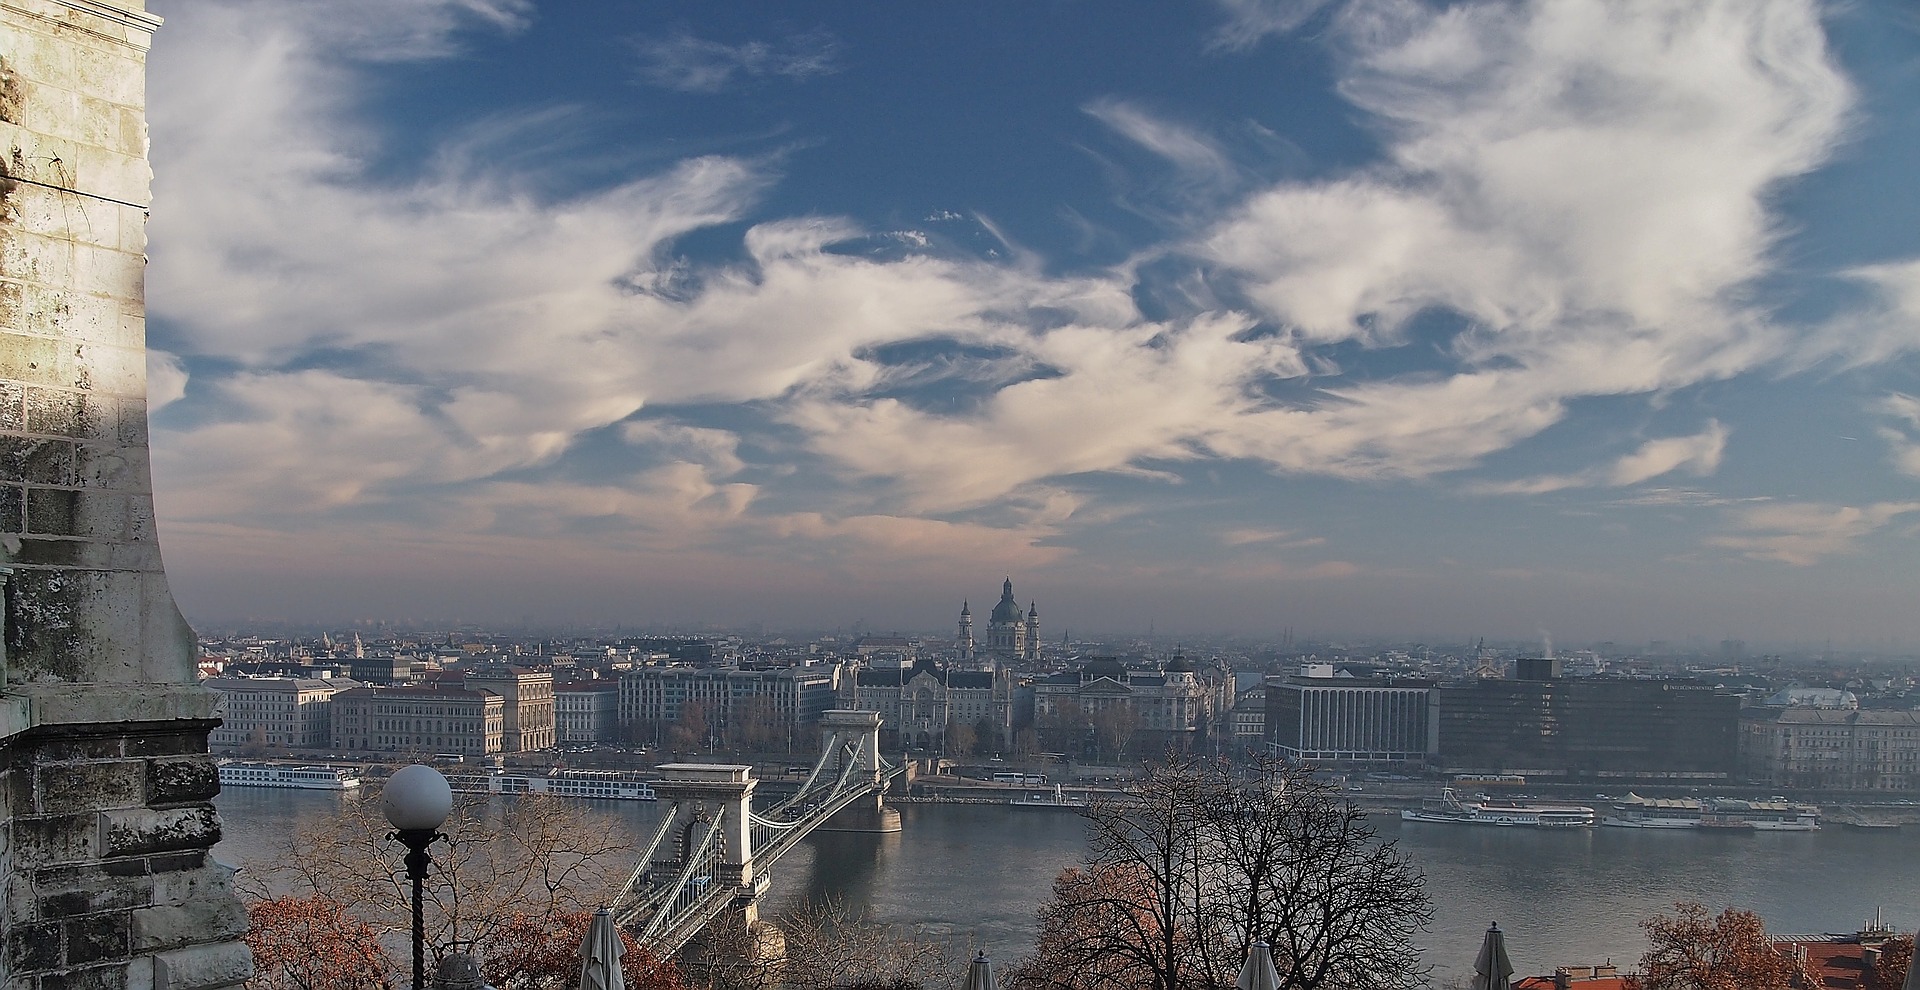 Die Luftqualität verschlechtert sich in den nordostungarischen Städten